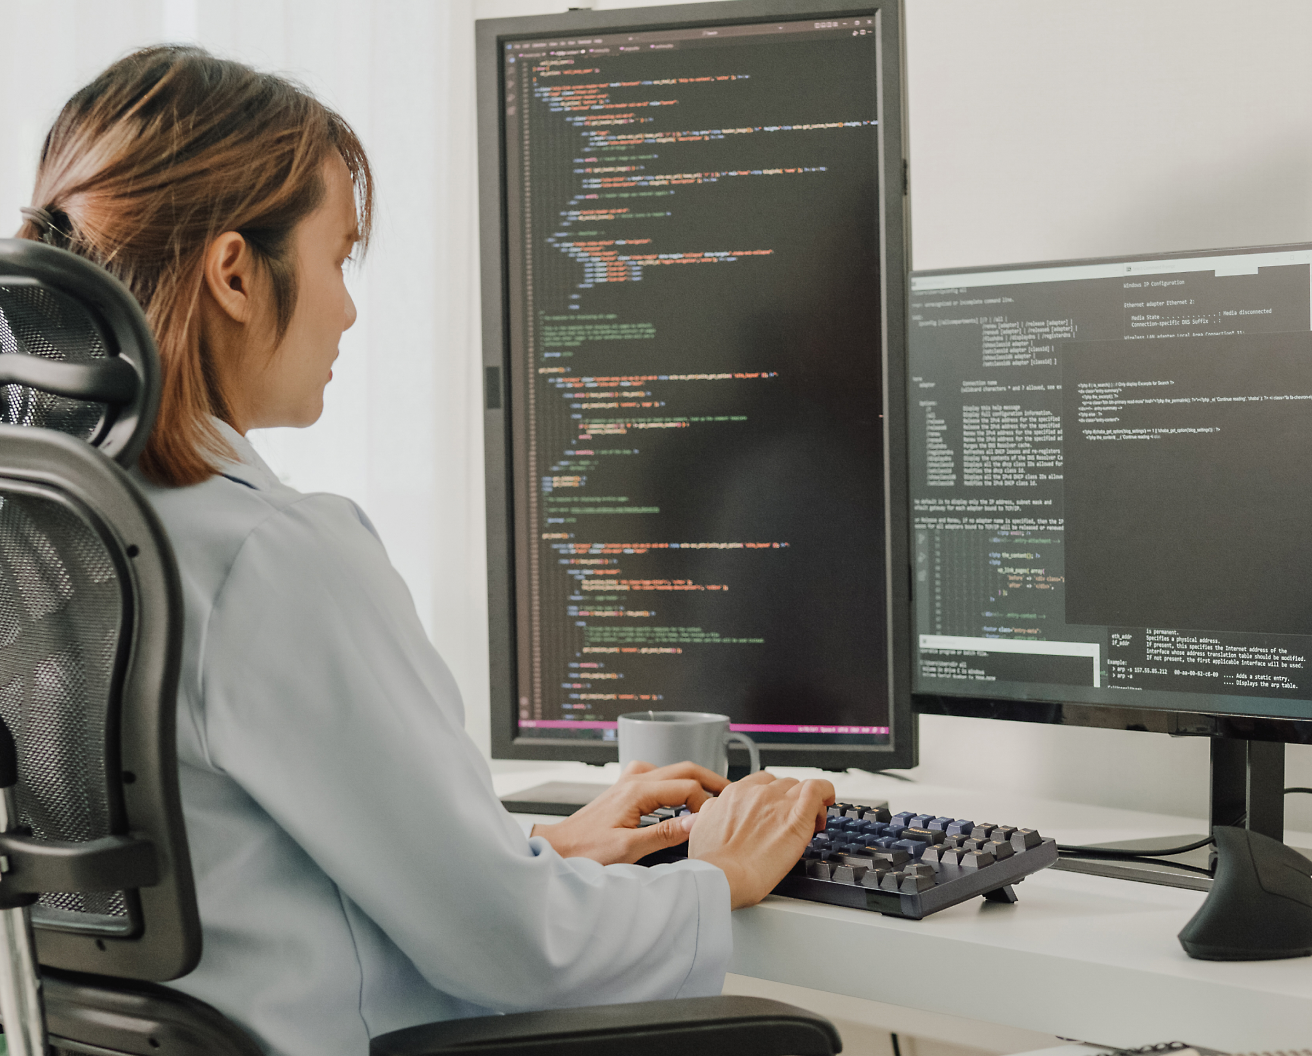 사무실 의자에 앉아 프로그래밍 코드가 표시된 여러 화면 디스플레이가 있는 컴퓨터에서 코딩하는 여성.